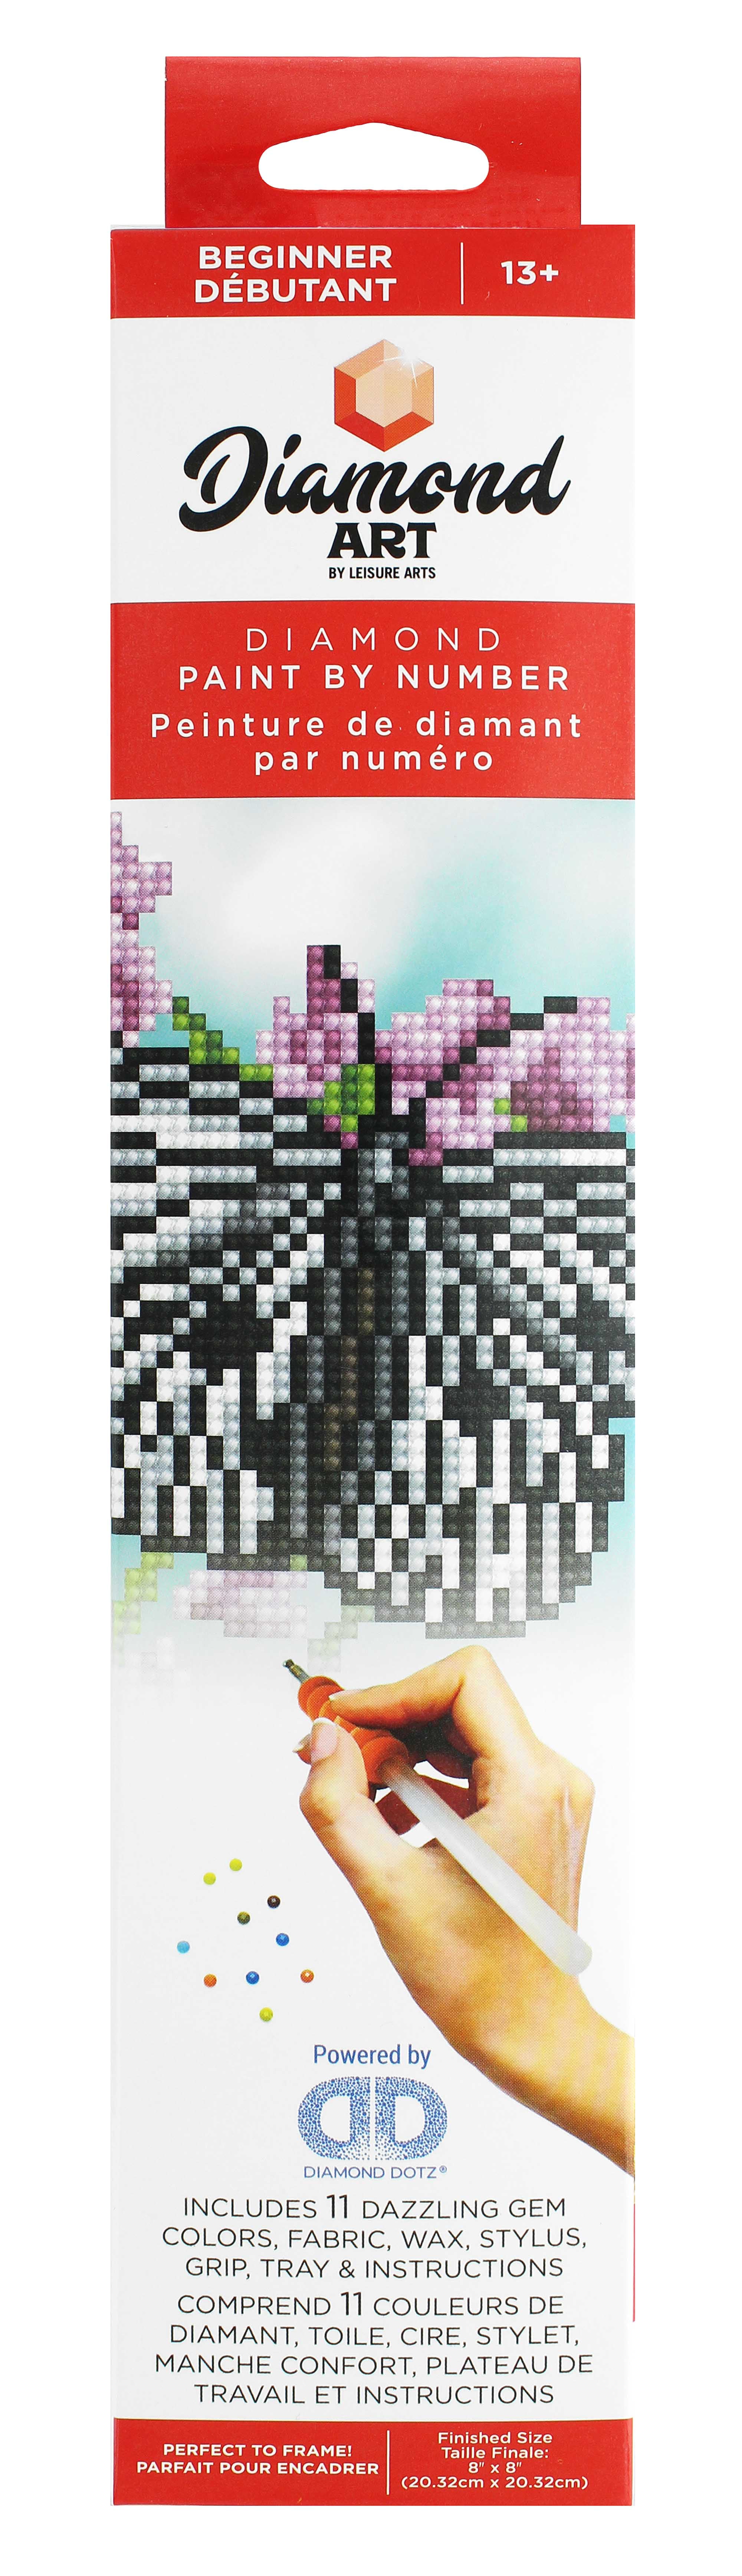 56765 Diamond Art Kit 8x8 Beginner Rice Paper Butterfly